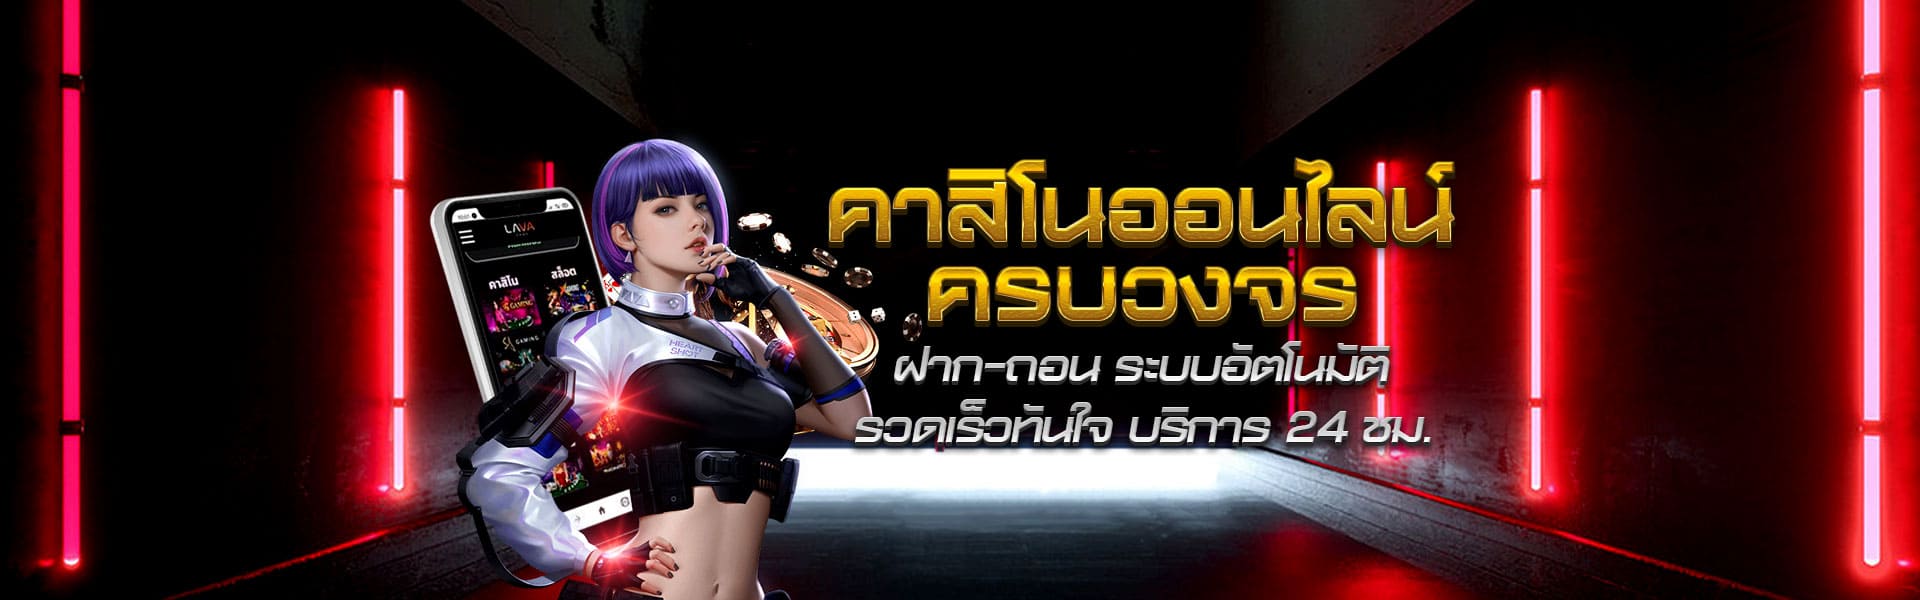 LAVA79 สุดยอด เว็บไซต์ ที่เปิดบริการ เกมบาคาร่า ออนไลน์ ที่ดีที่สุด แห่งเดียวในประเทศไทย พร้อมให้สมาชิกได้ ดาวน์โหลดไว้ เล่นบนมือถือได้แล้ววันนี้ กับ สล็อตลาวา